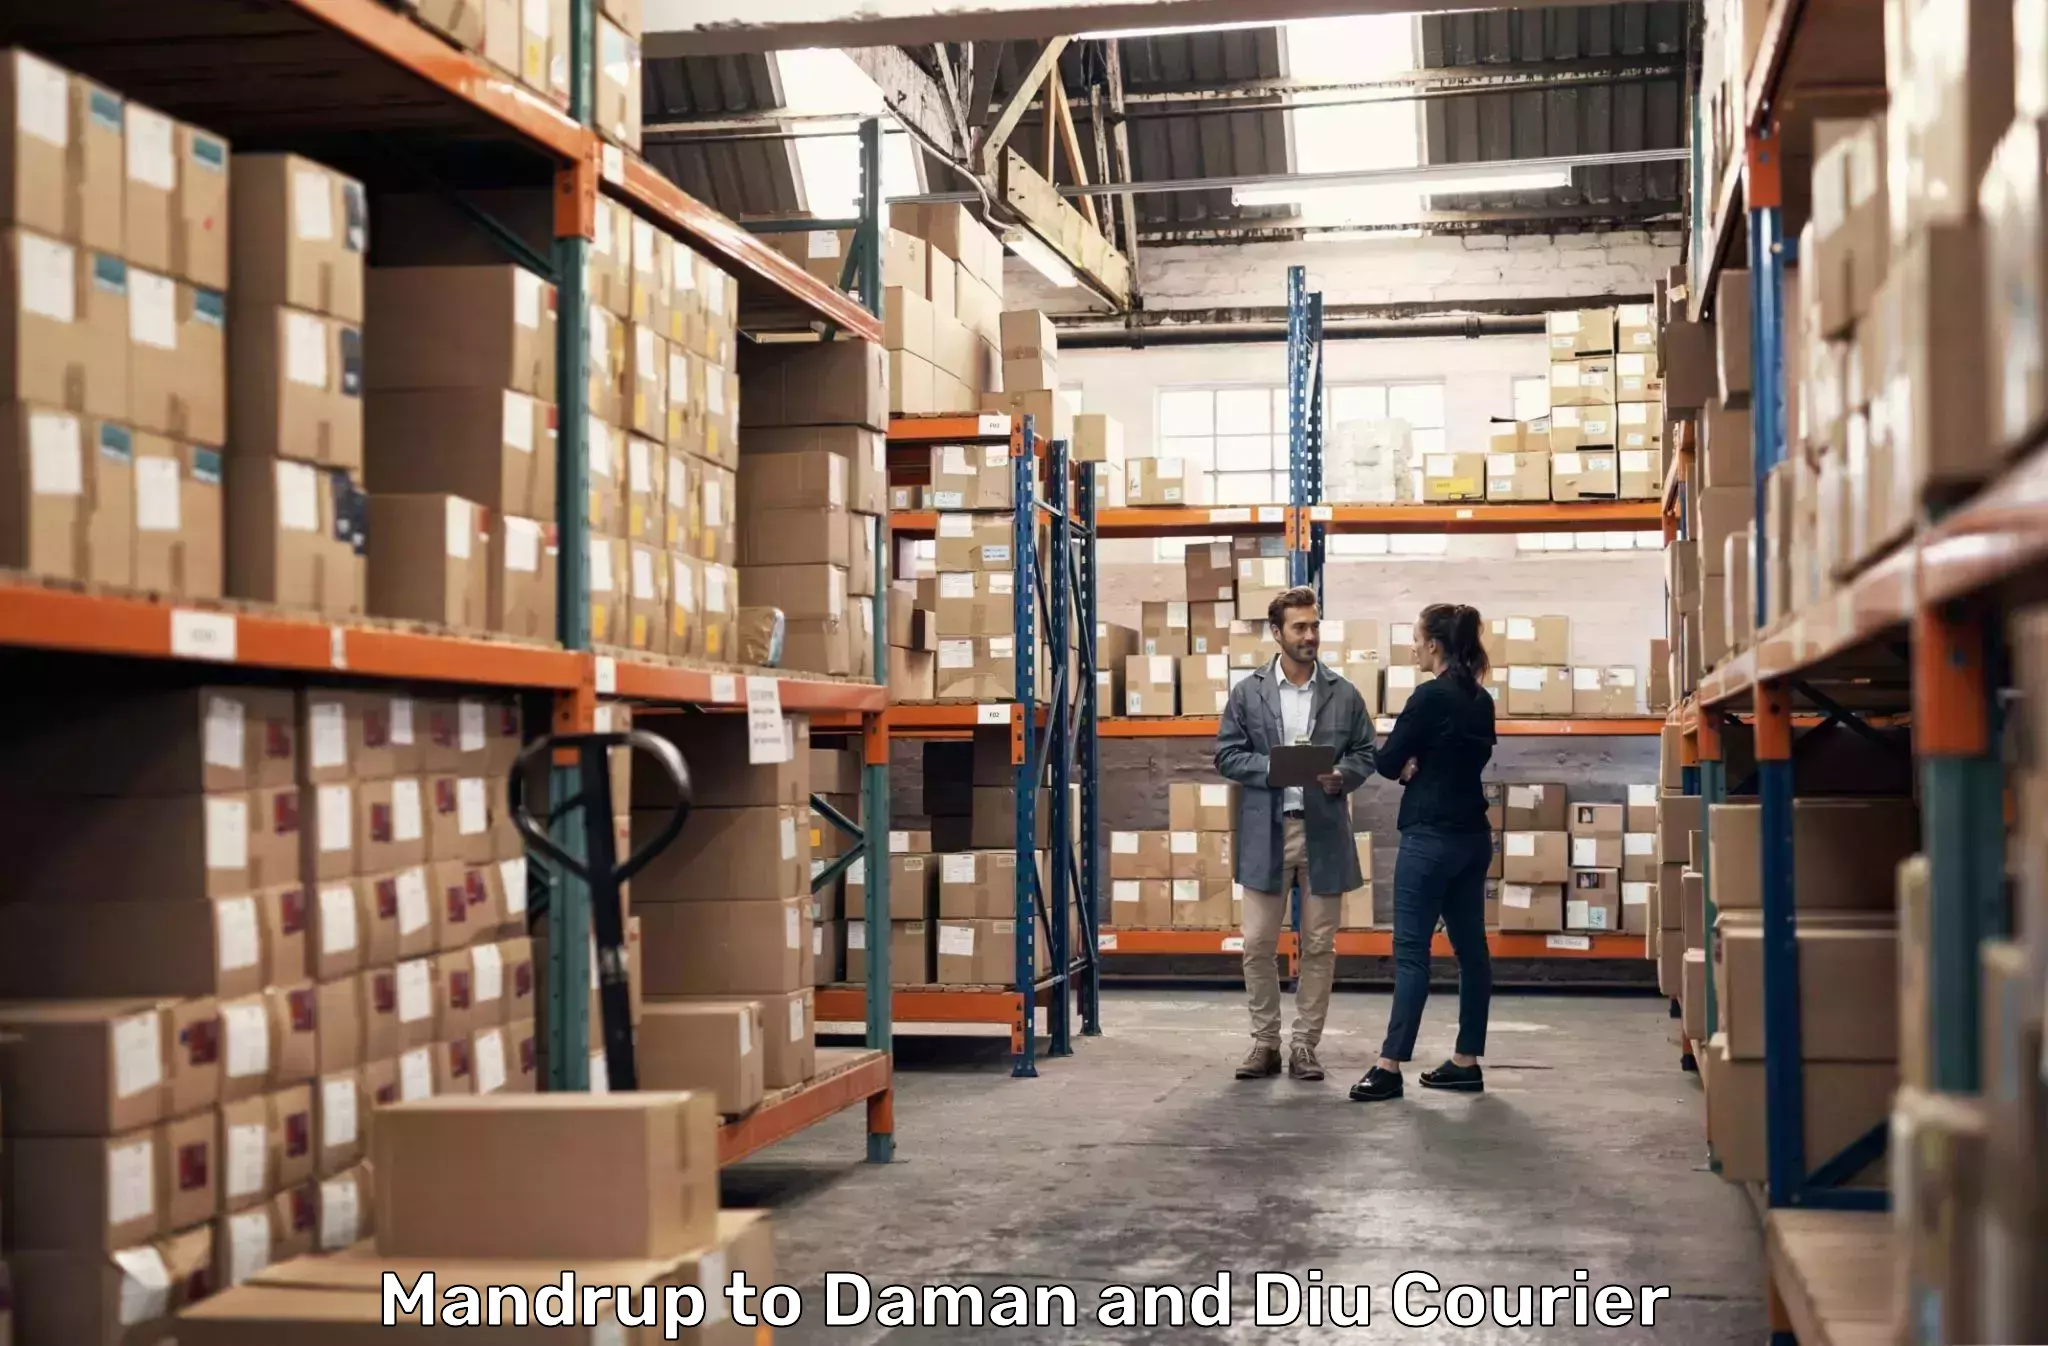 Express logistics providers Mandrup to Daman and Diu